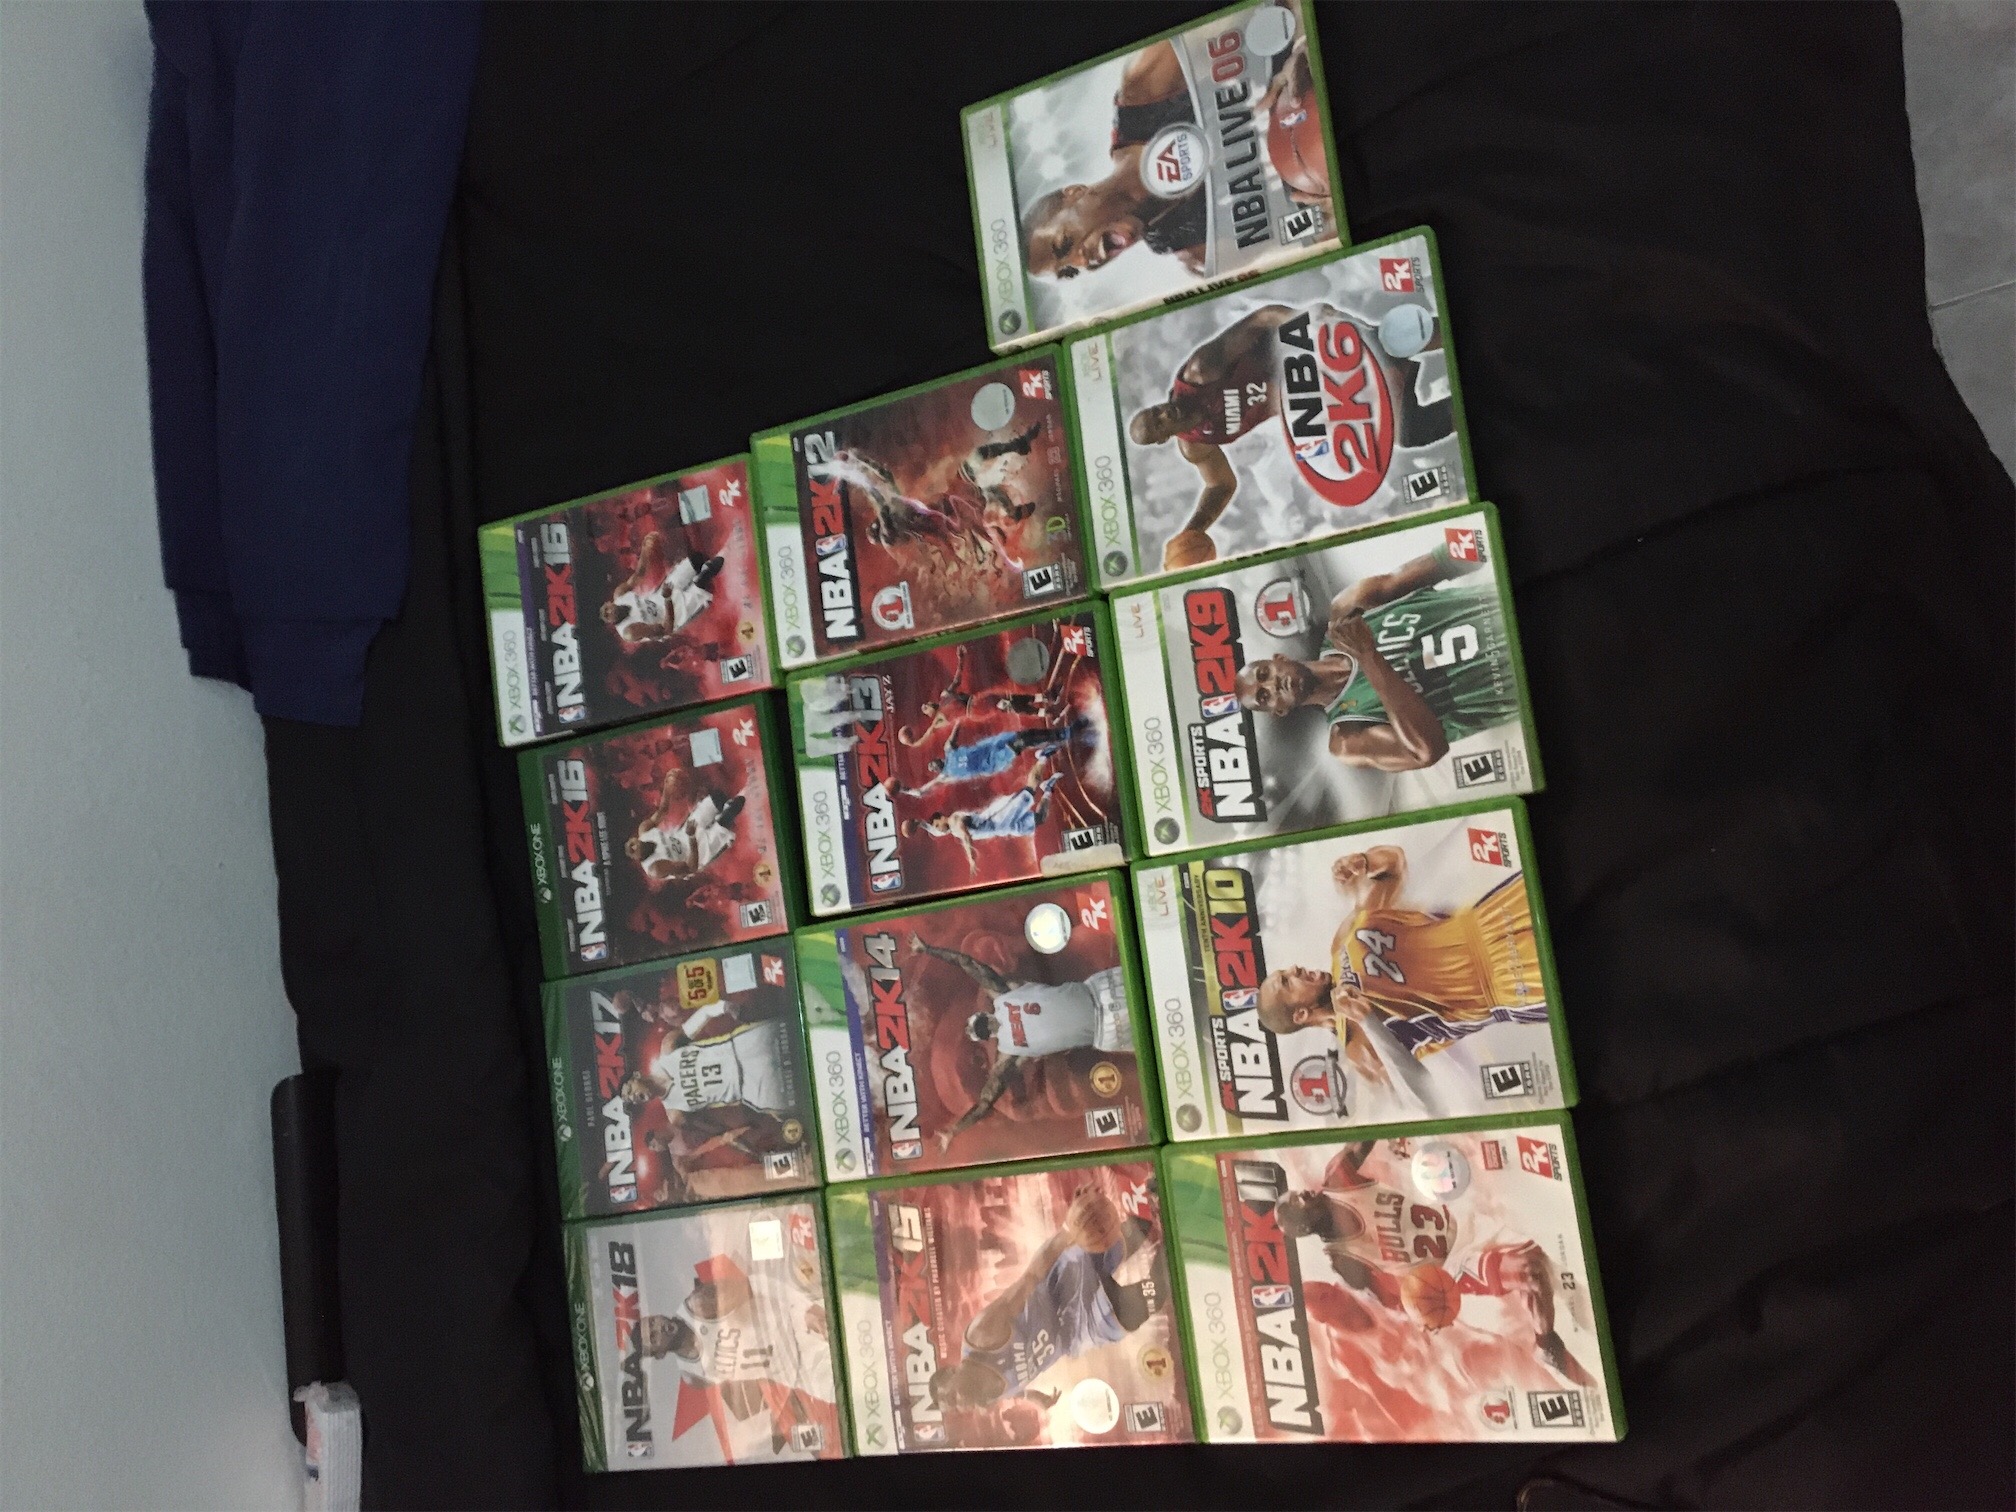 consolas y videojuegos - Nba basketball juegos Xbox 360 Xbox one cintas videojuegos